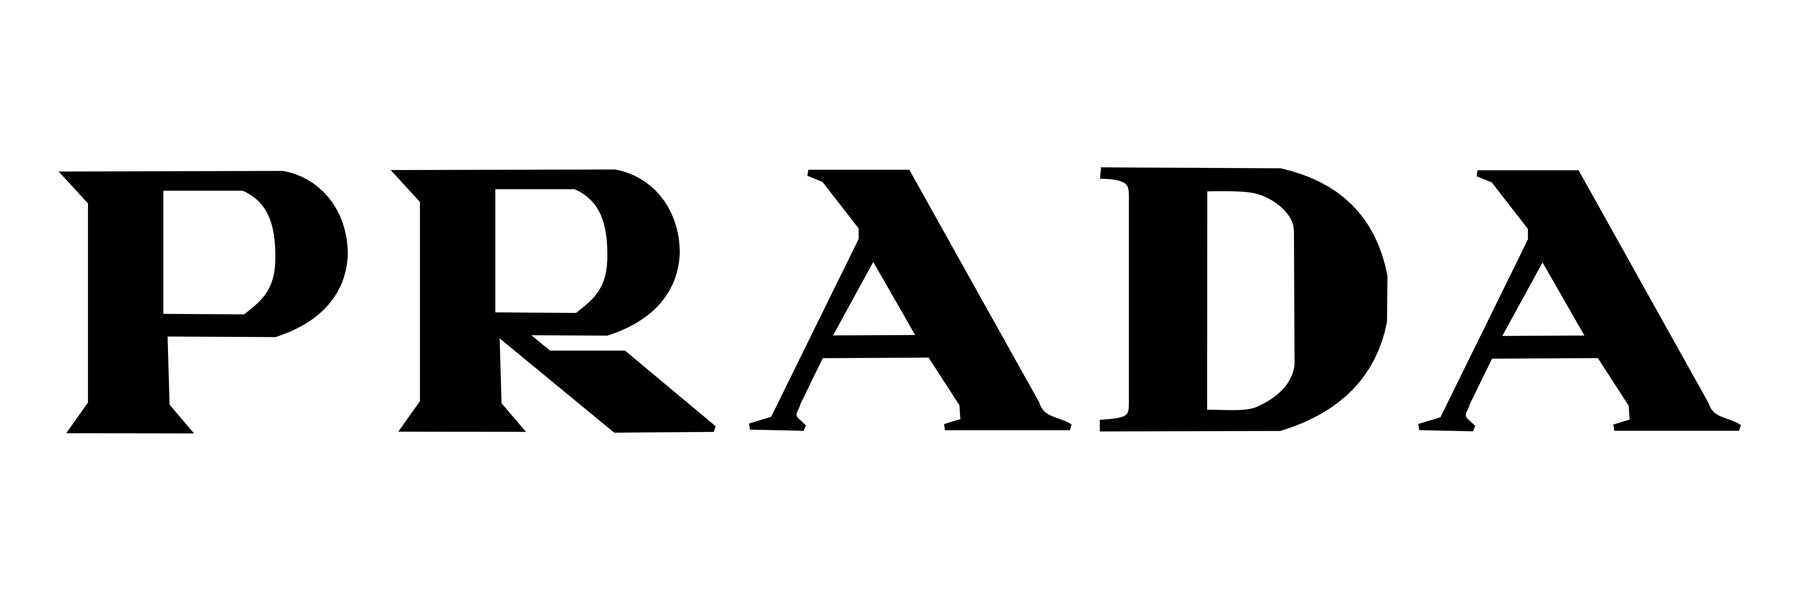 prada brand logo